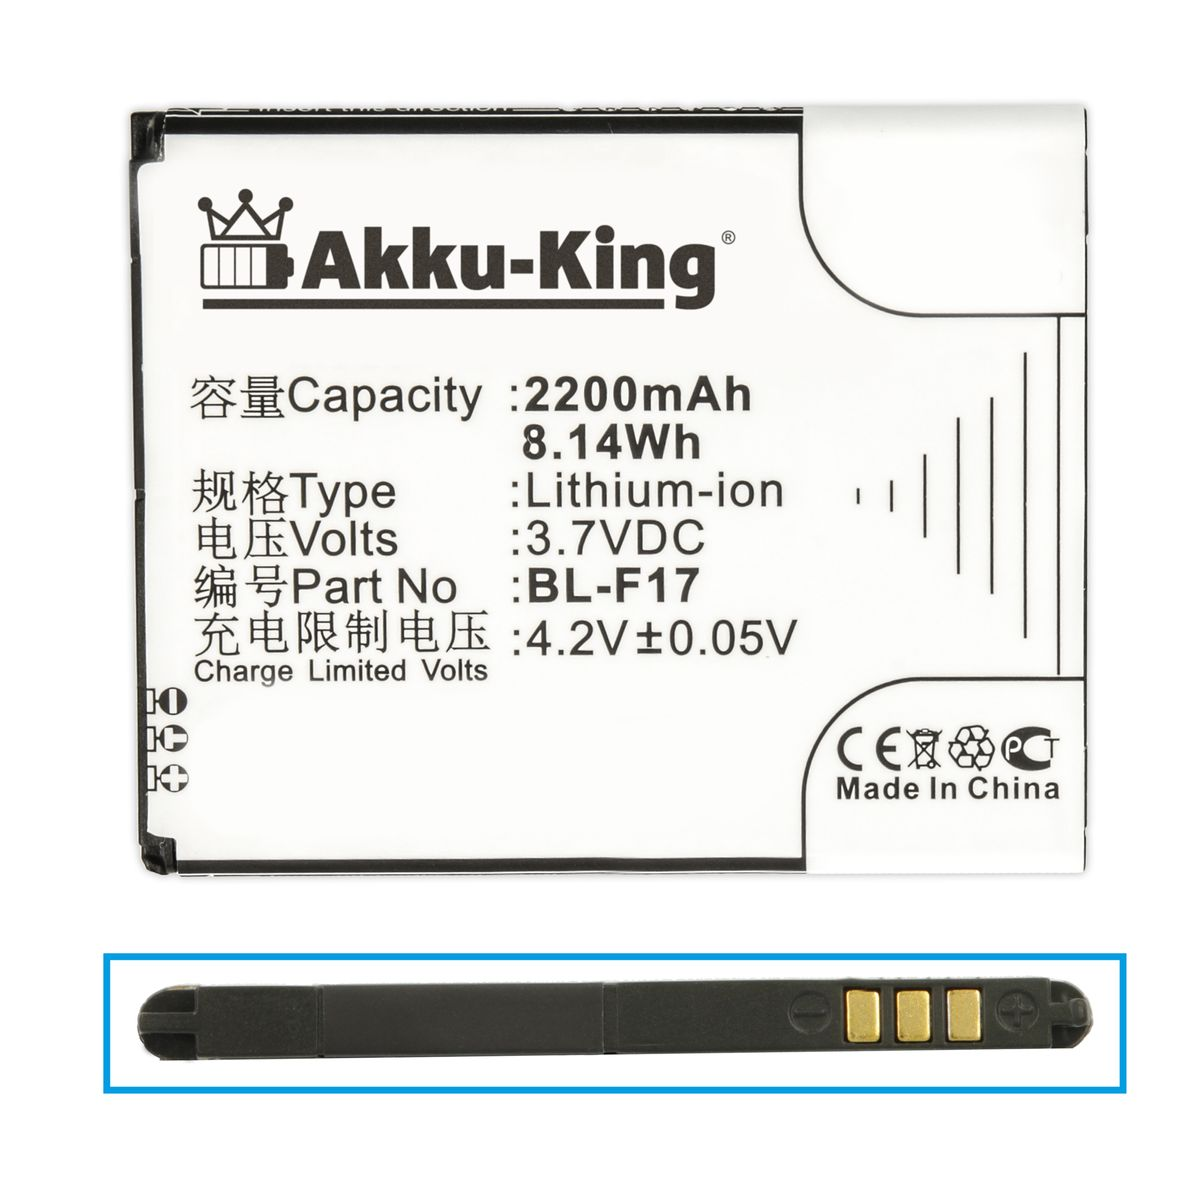 Phicomm AKKU-KING Handy-Akku, kompatibel Volt, Li-Ion mit Akku 3.7 2200mAh BL-F17